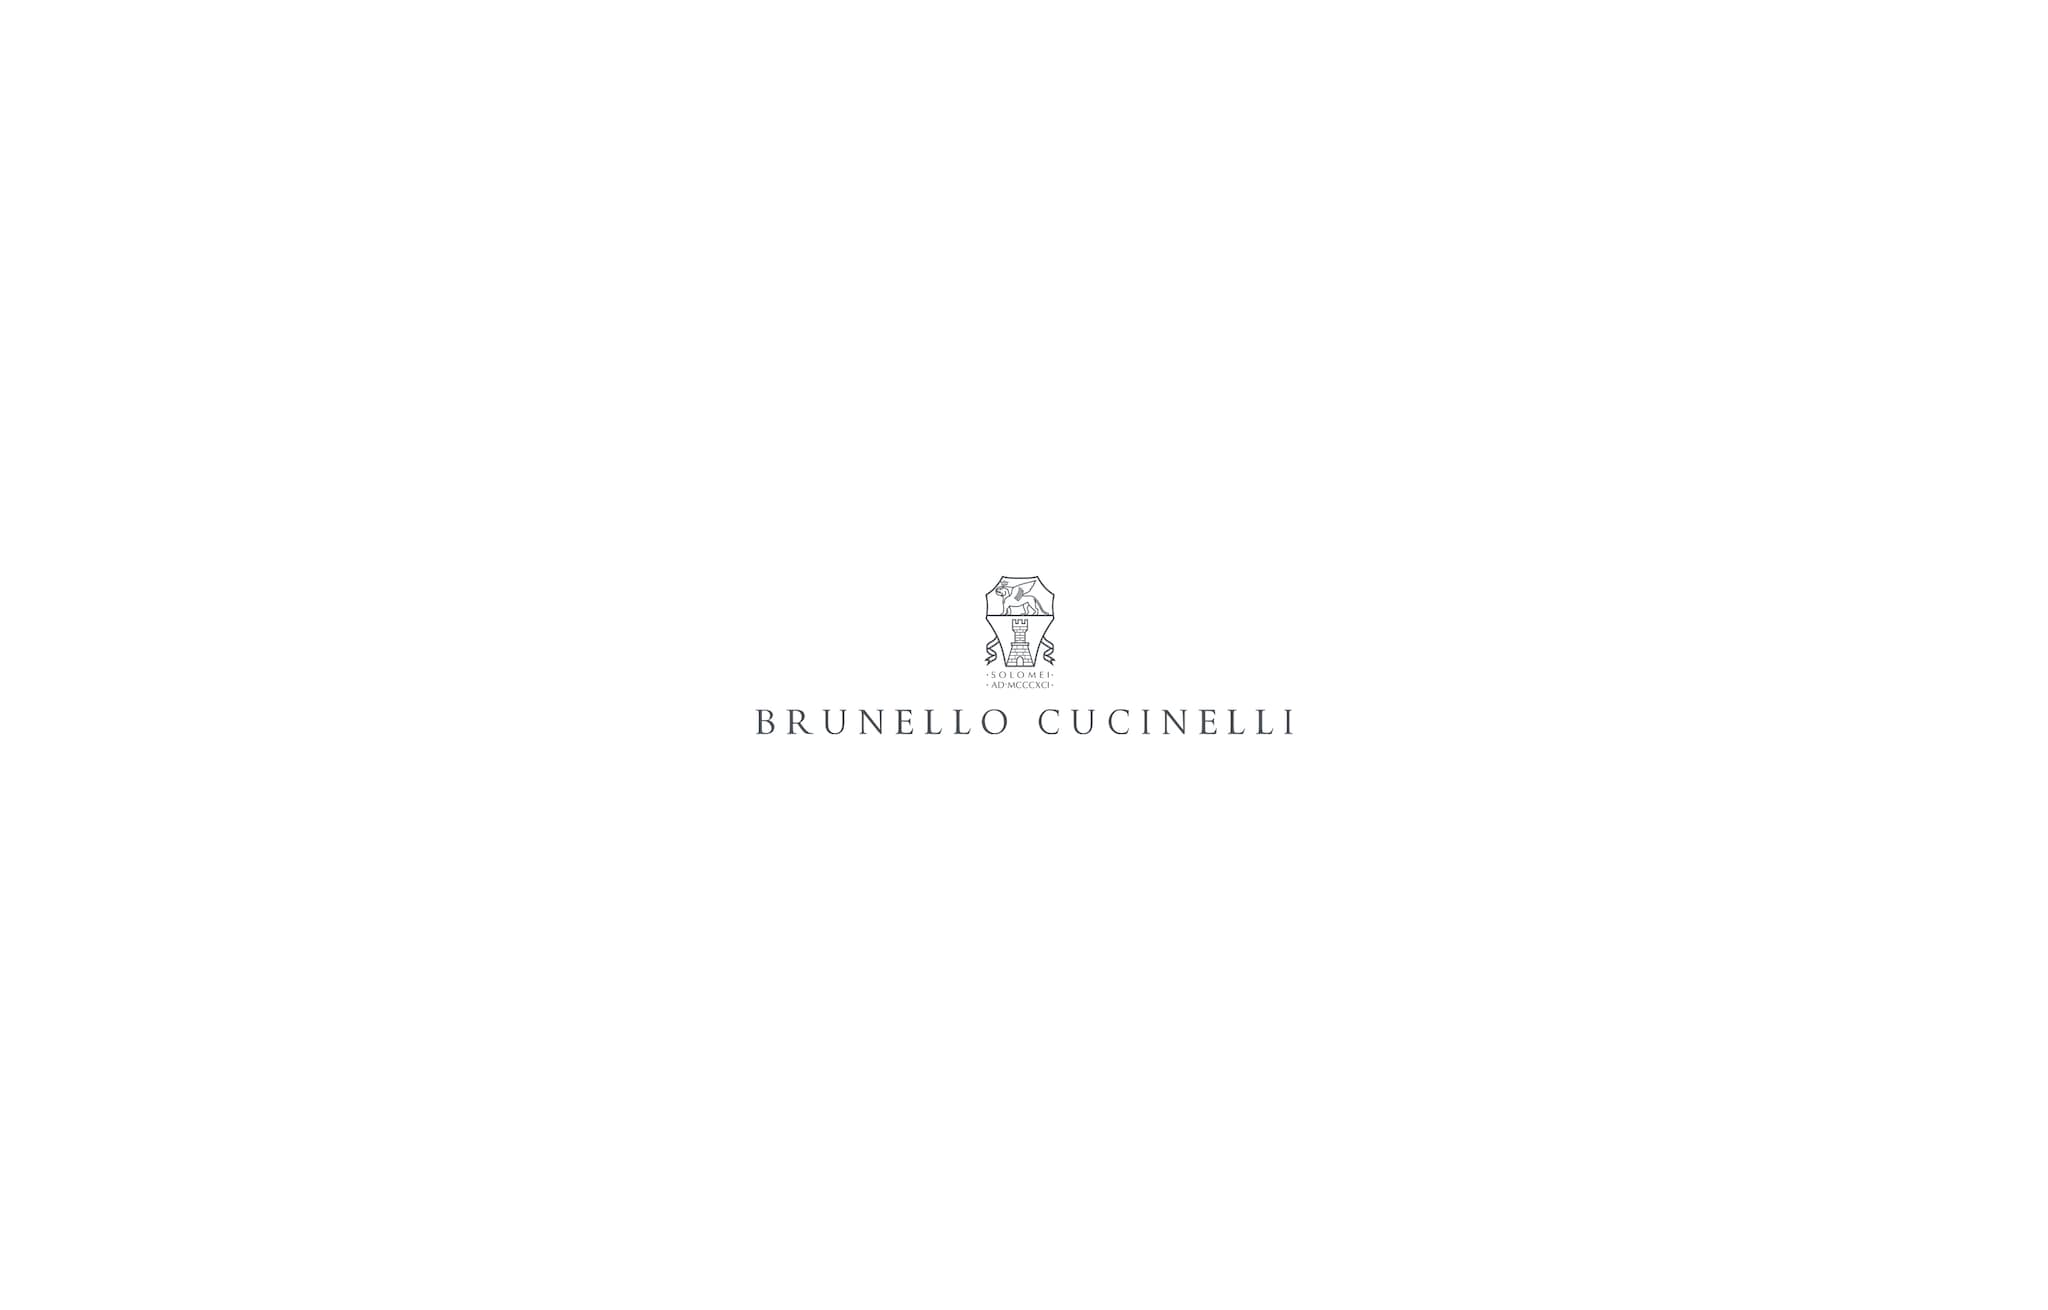  タキシード フォーマルジャケット ホワイト メンズ - Brunello Cucinelli 